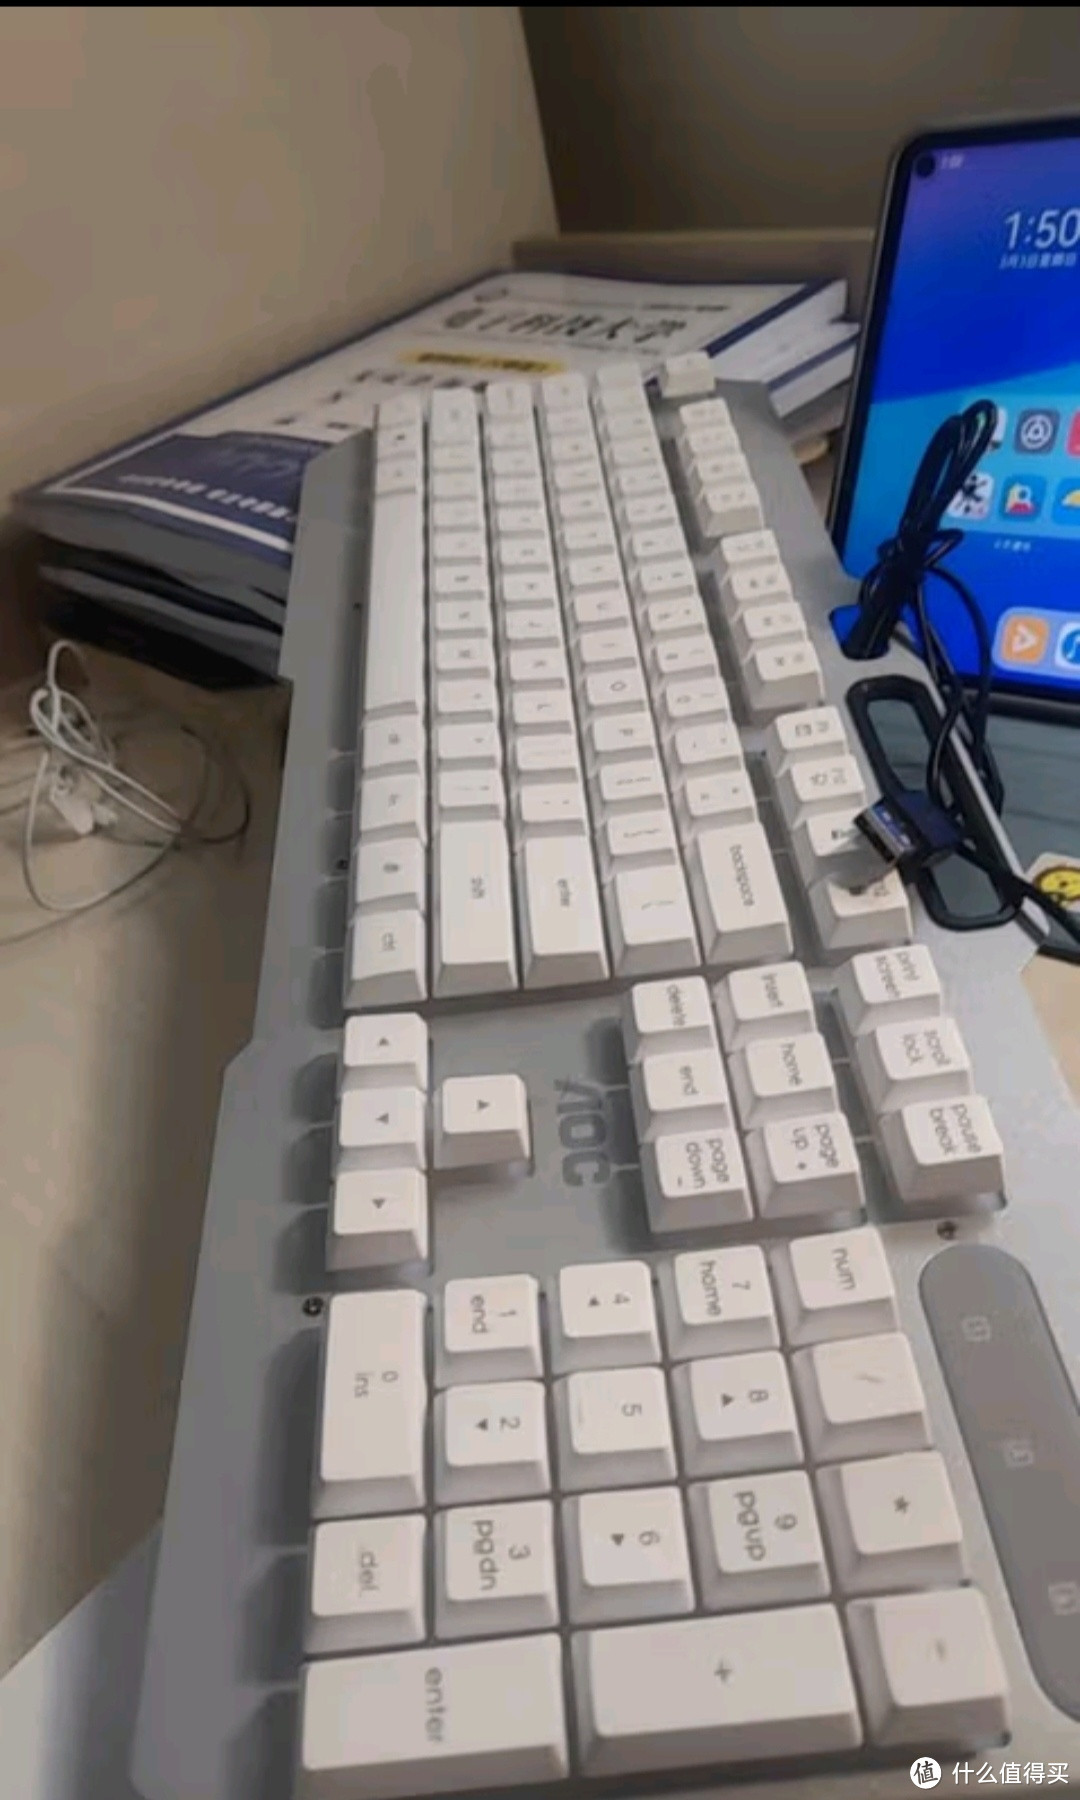 AOC【金属面板】真机械手感键盘鼠标套装有线静音电竞游戏吃鸡LOL背光电脑笔记本办公套装 